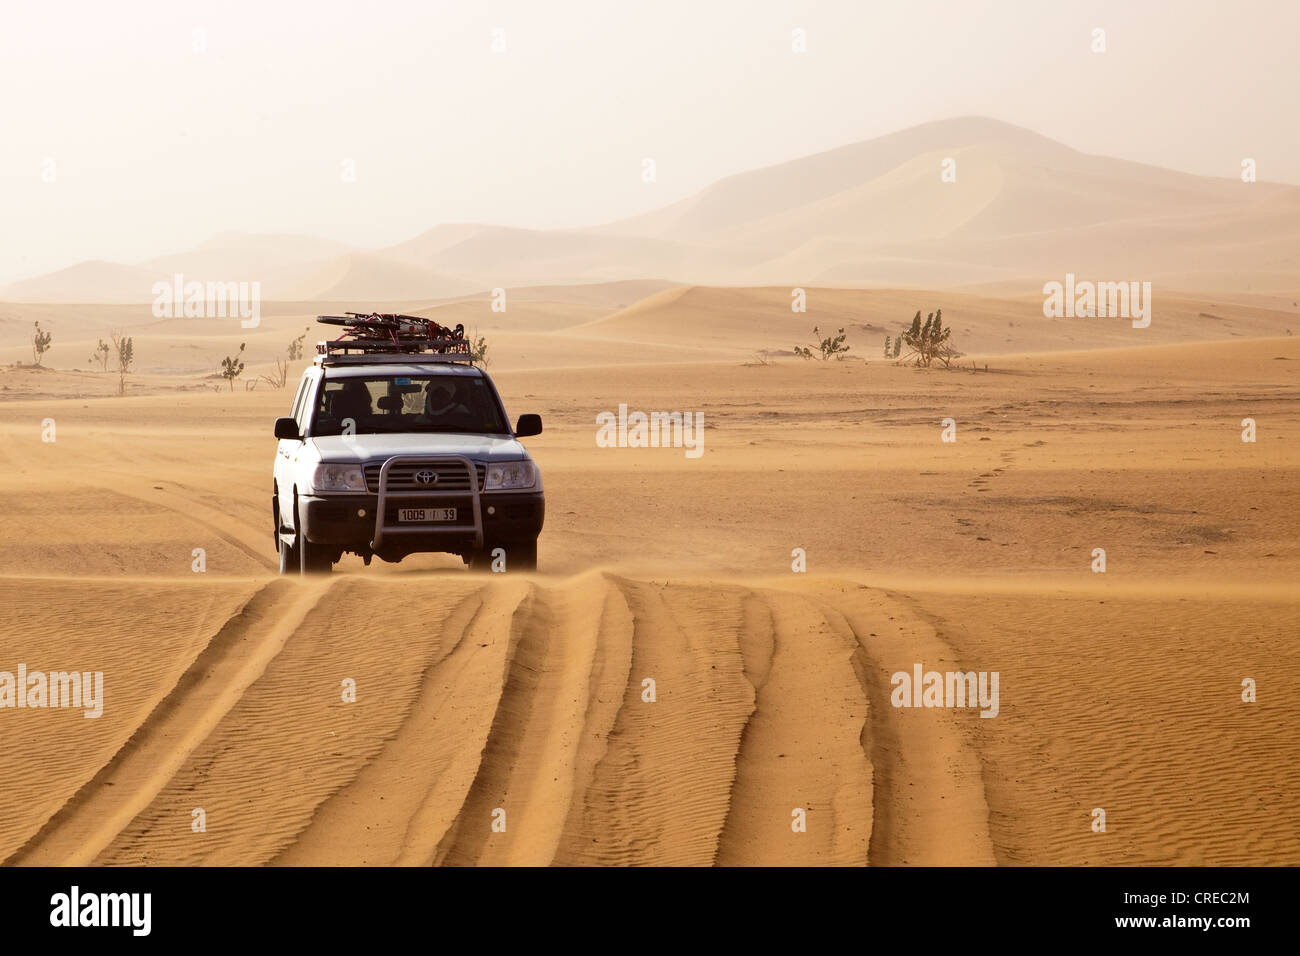 Un véhicule tout-terrain, Toyota Land Cruiser, au dunes de l'Erg Chegaga, désert du Sahara, près de Mhamid, Maroc, Afrique Banque D'Images